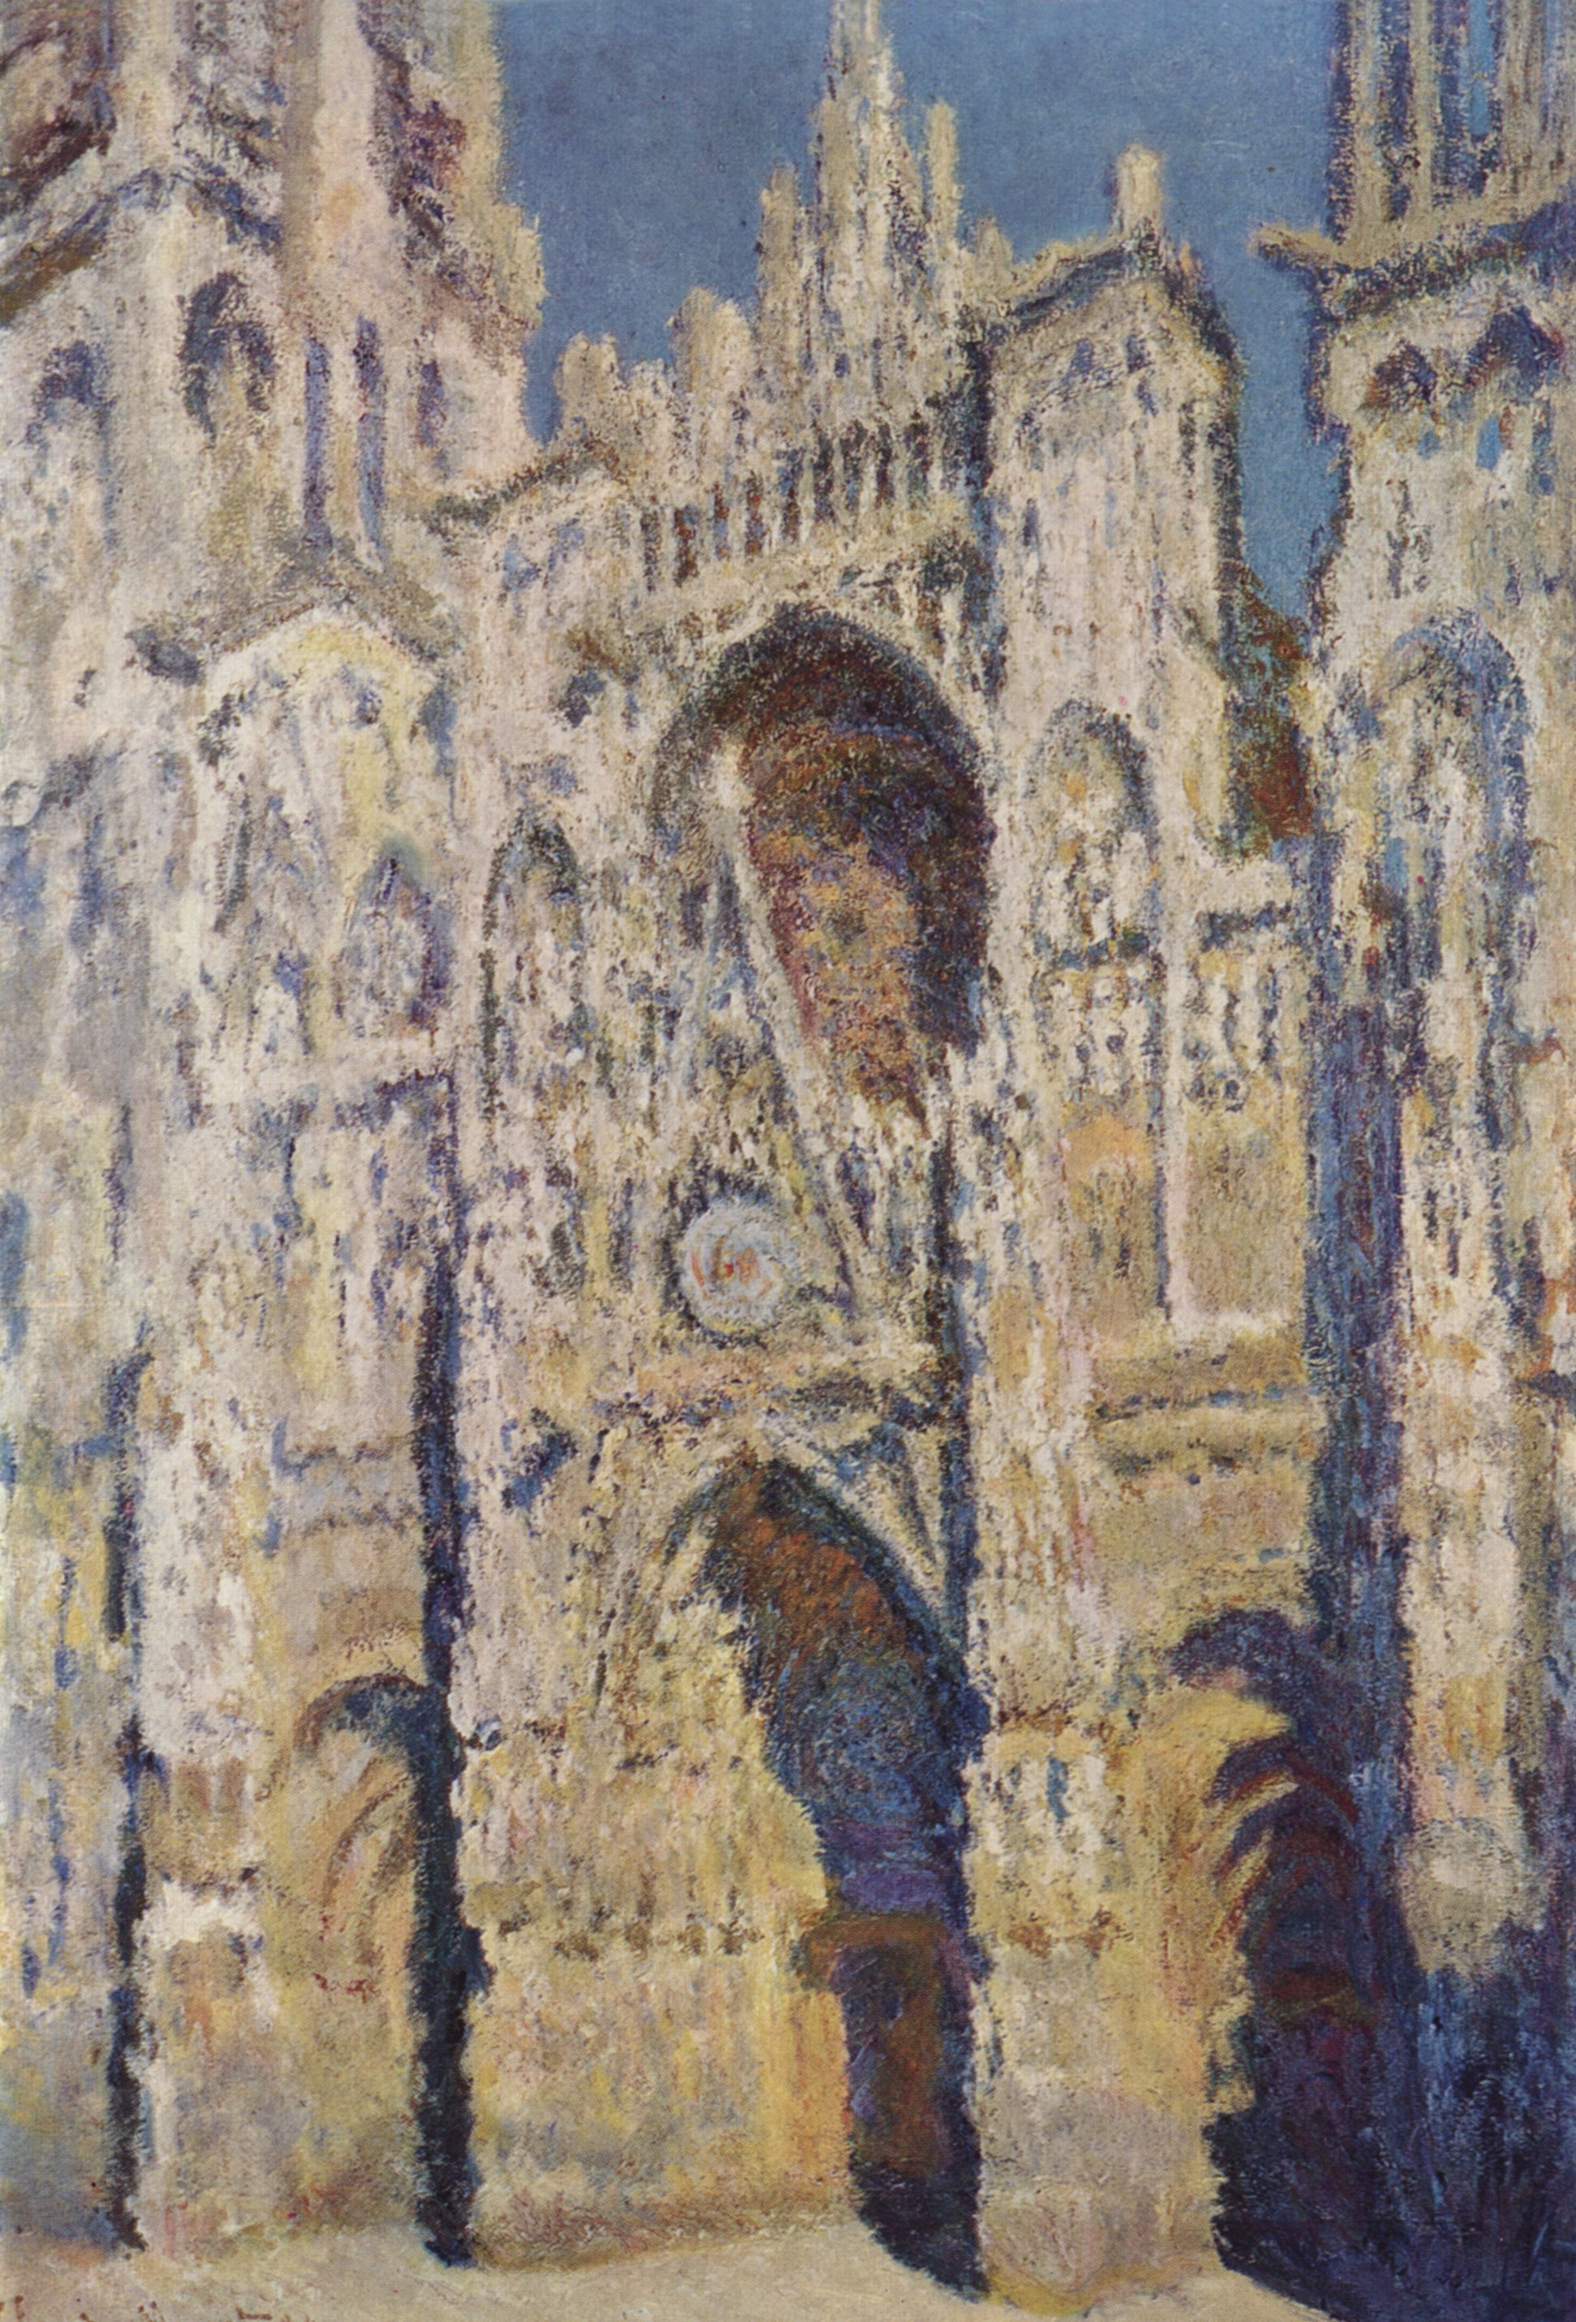 La Cathédrale de Rouen. Le portail et la tour Saint-Romain, plein soleil ; harmonie bleue et or (W1360) - Claude Monet